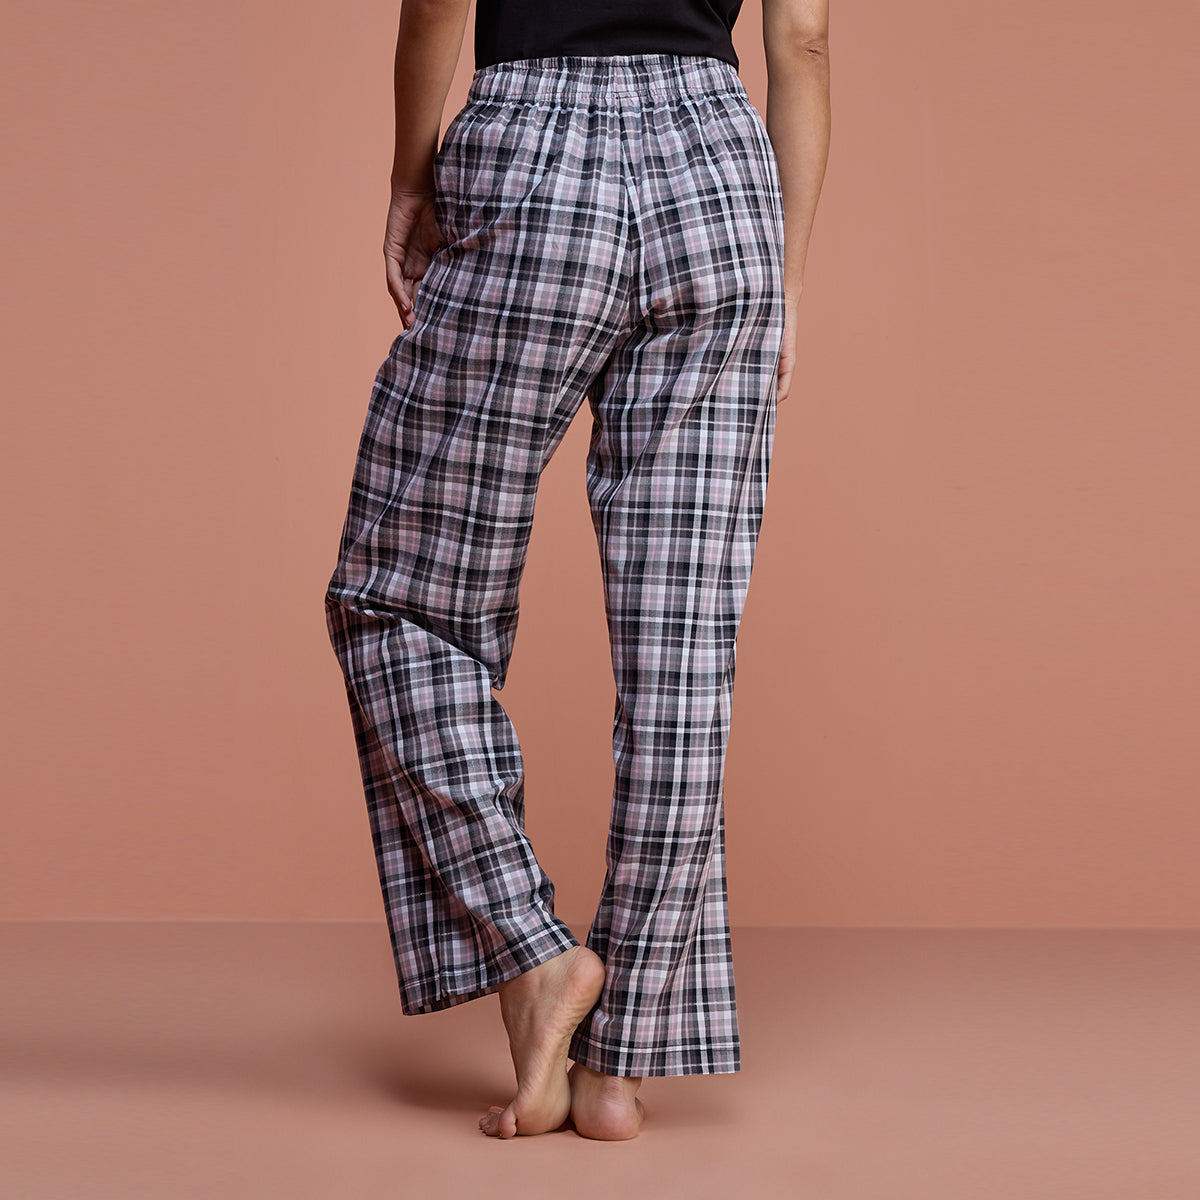 Cotton Plaid Pajama - NYS141 - Black Plaid